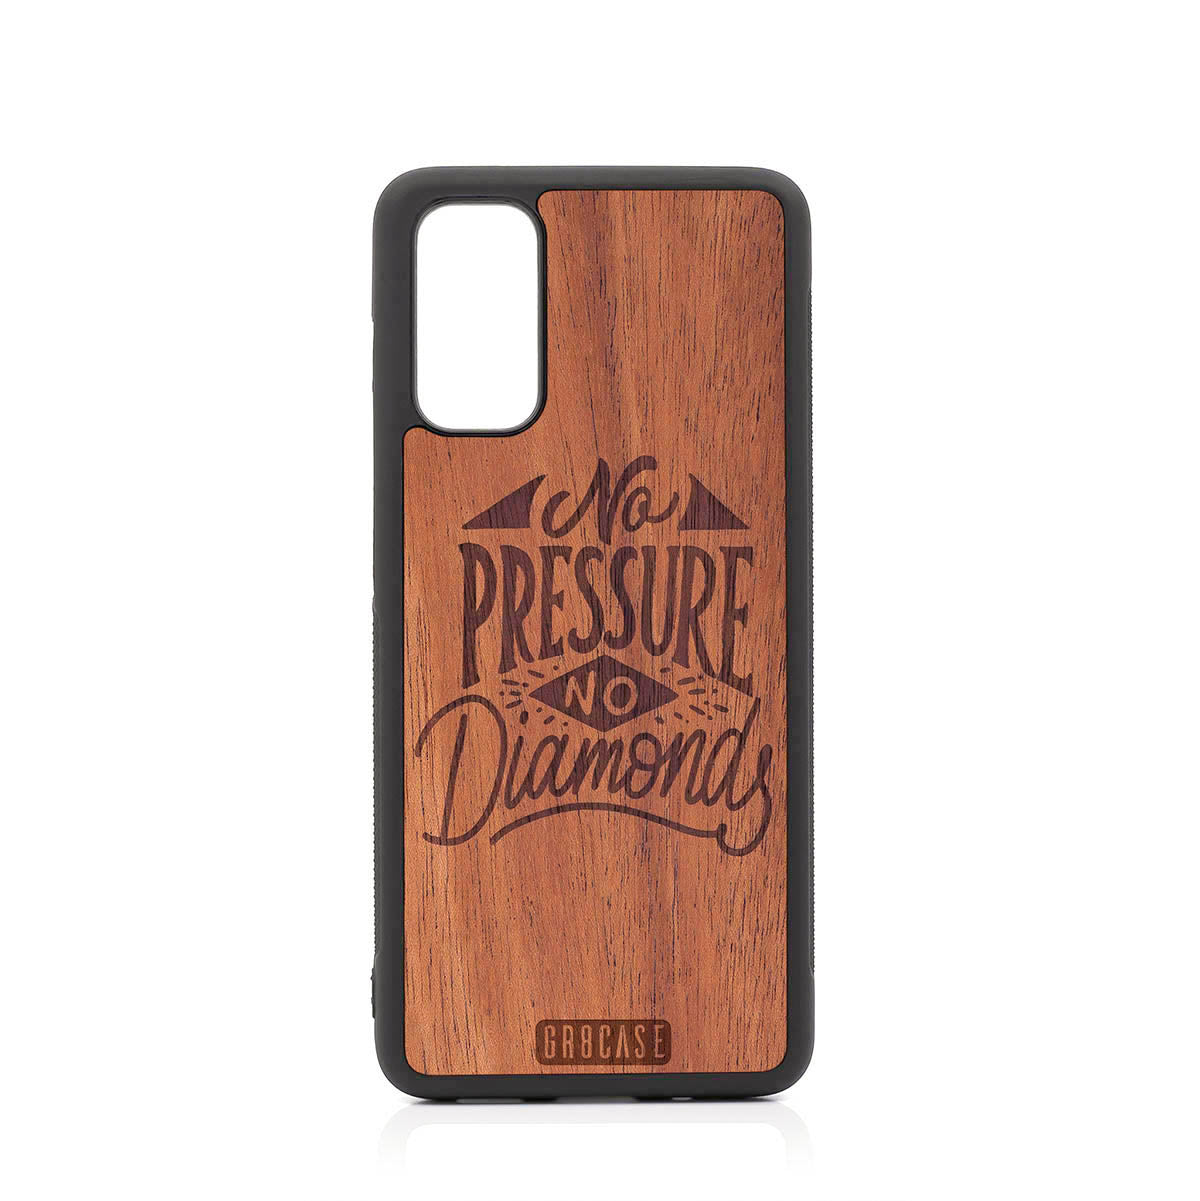 No Pressure No Diamonds Design Wood Case For Samsung Galaxy S20